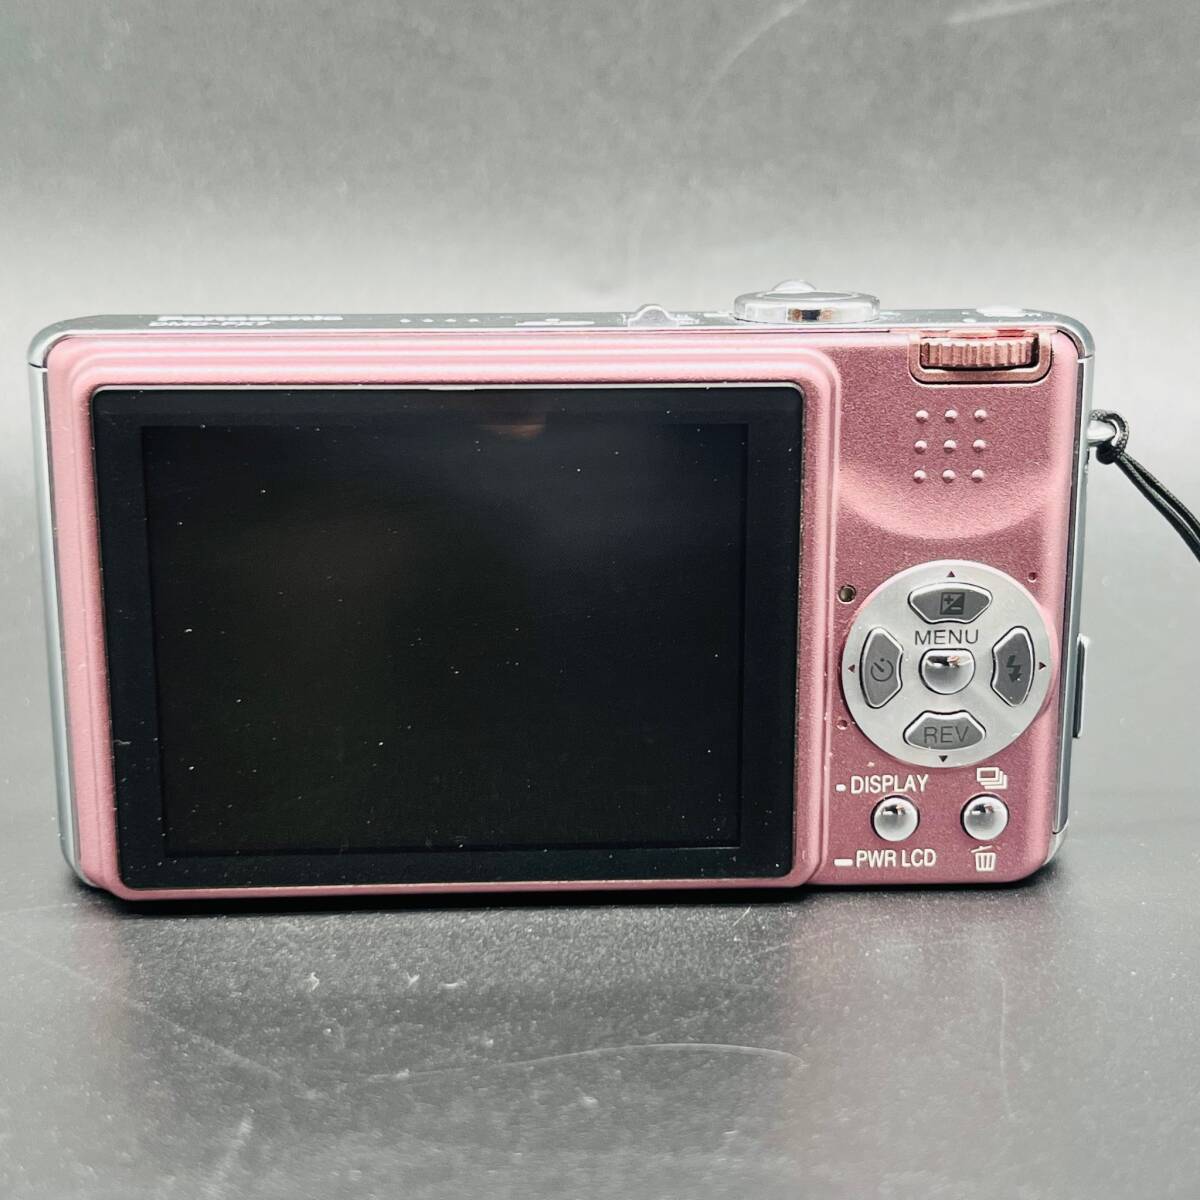 Panasonic Panasonic LUMIX Lumix DMC-FX7 цифровая камера компакт-камера цифровая камера розовый оптическое оборудование камера line приятный б/у товар 8461